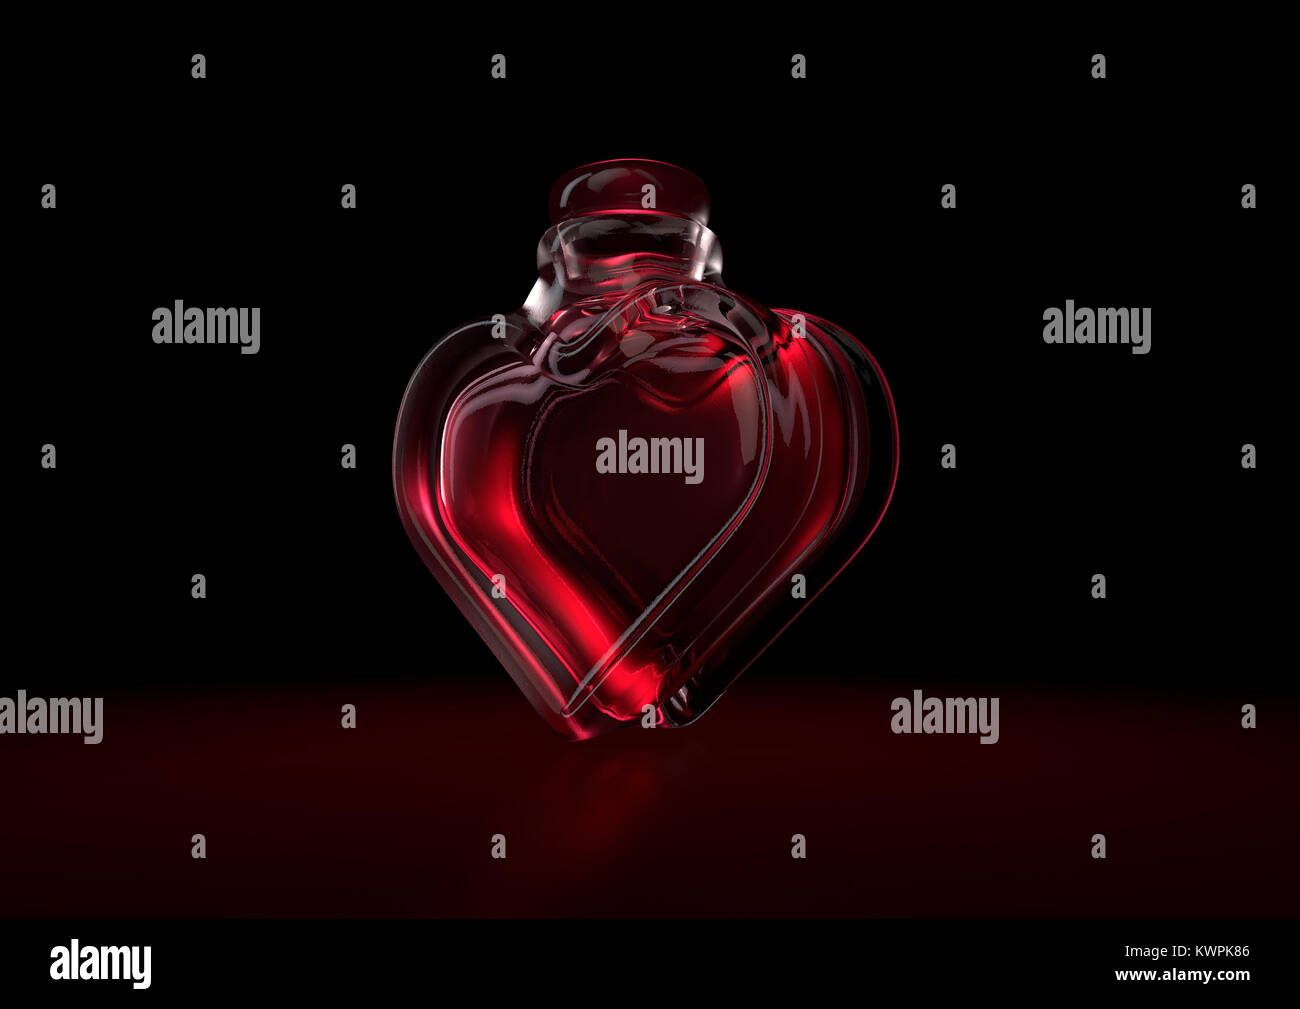 Un concetto di amore che mostra una a forma di cuore ad una bottiglia di vetro contenente un rosso pozione d'amore al buio su un sfondo retroilluminato - 3D render Foto Stock